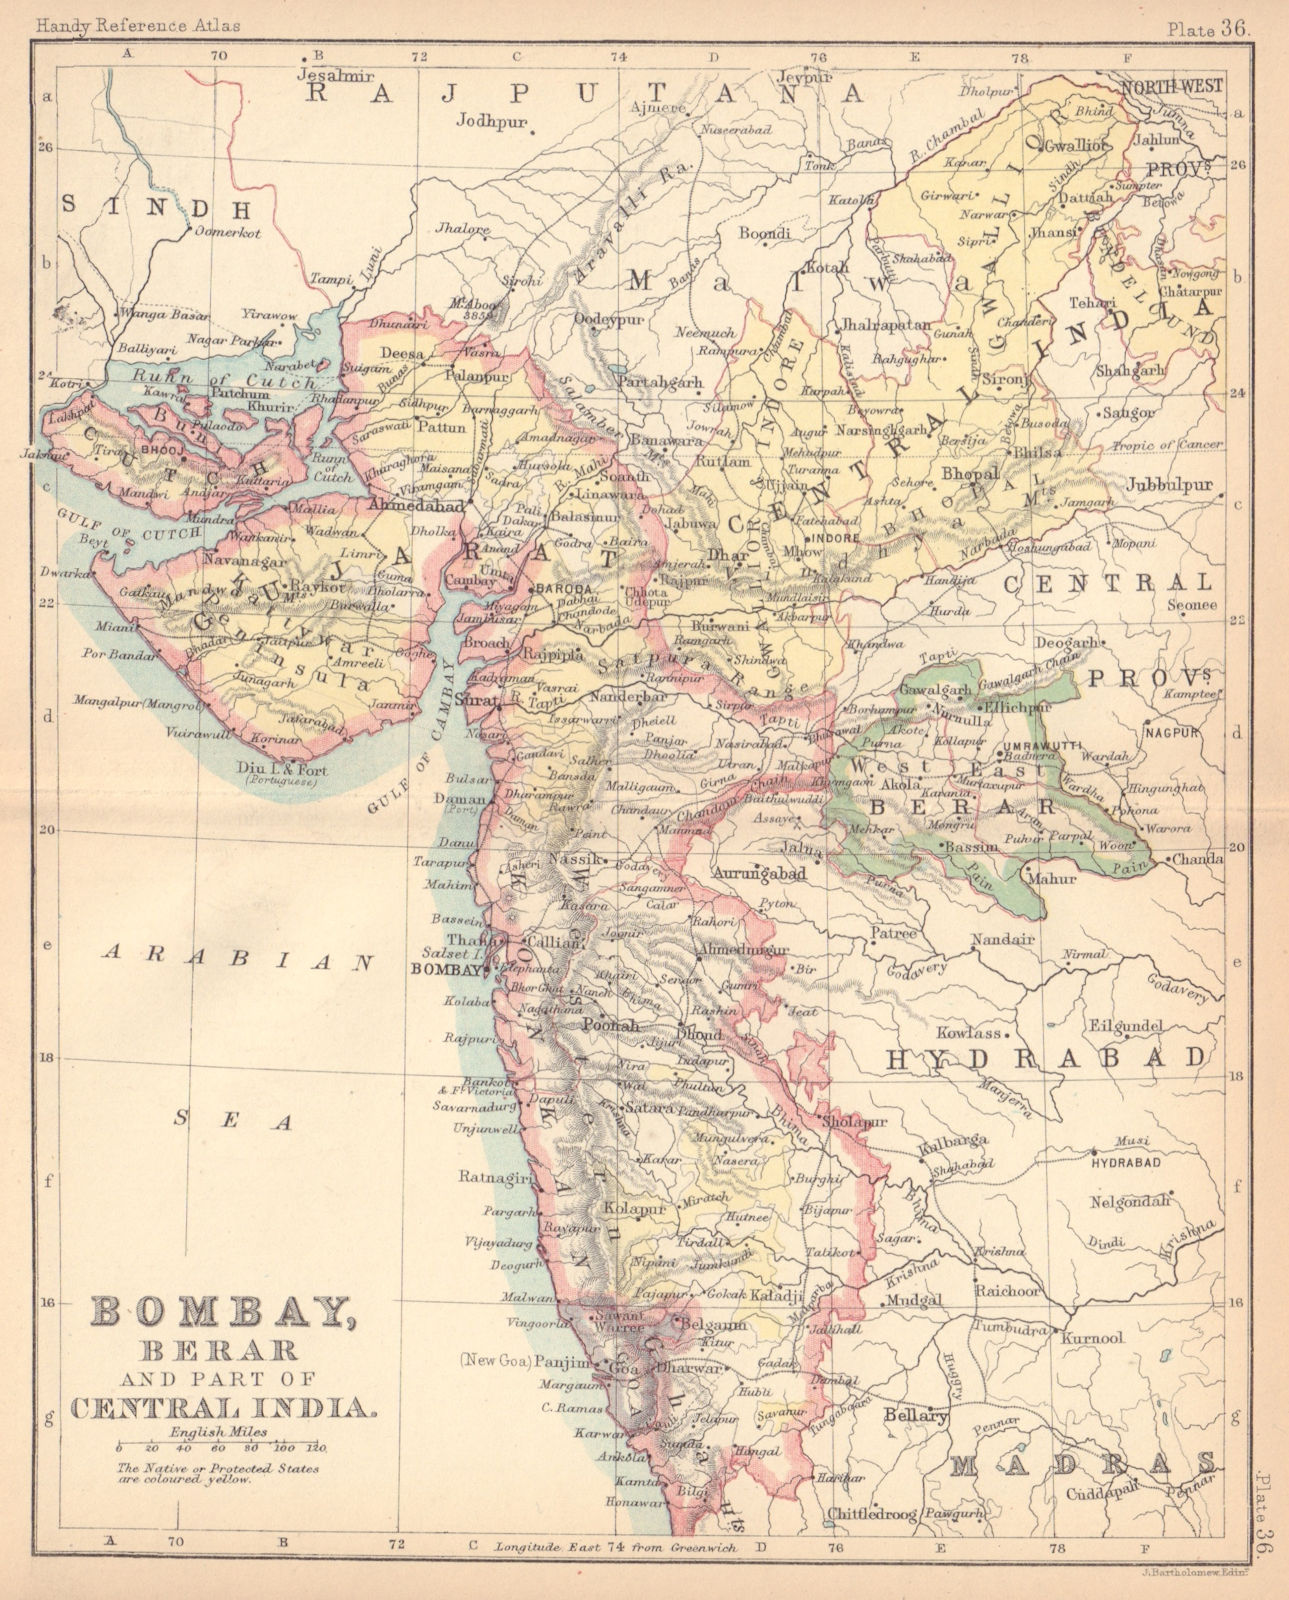 British India West. Bombay, Berar & part of Central India. BARTHOLOMEW 1888 map